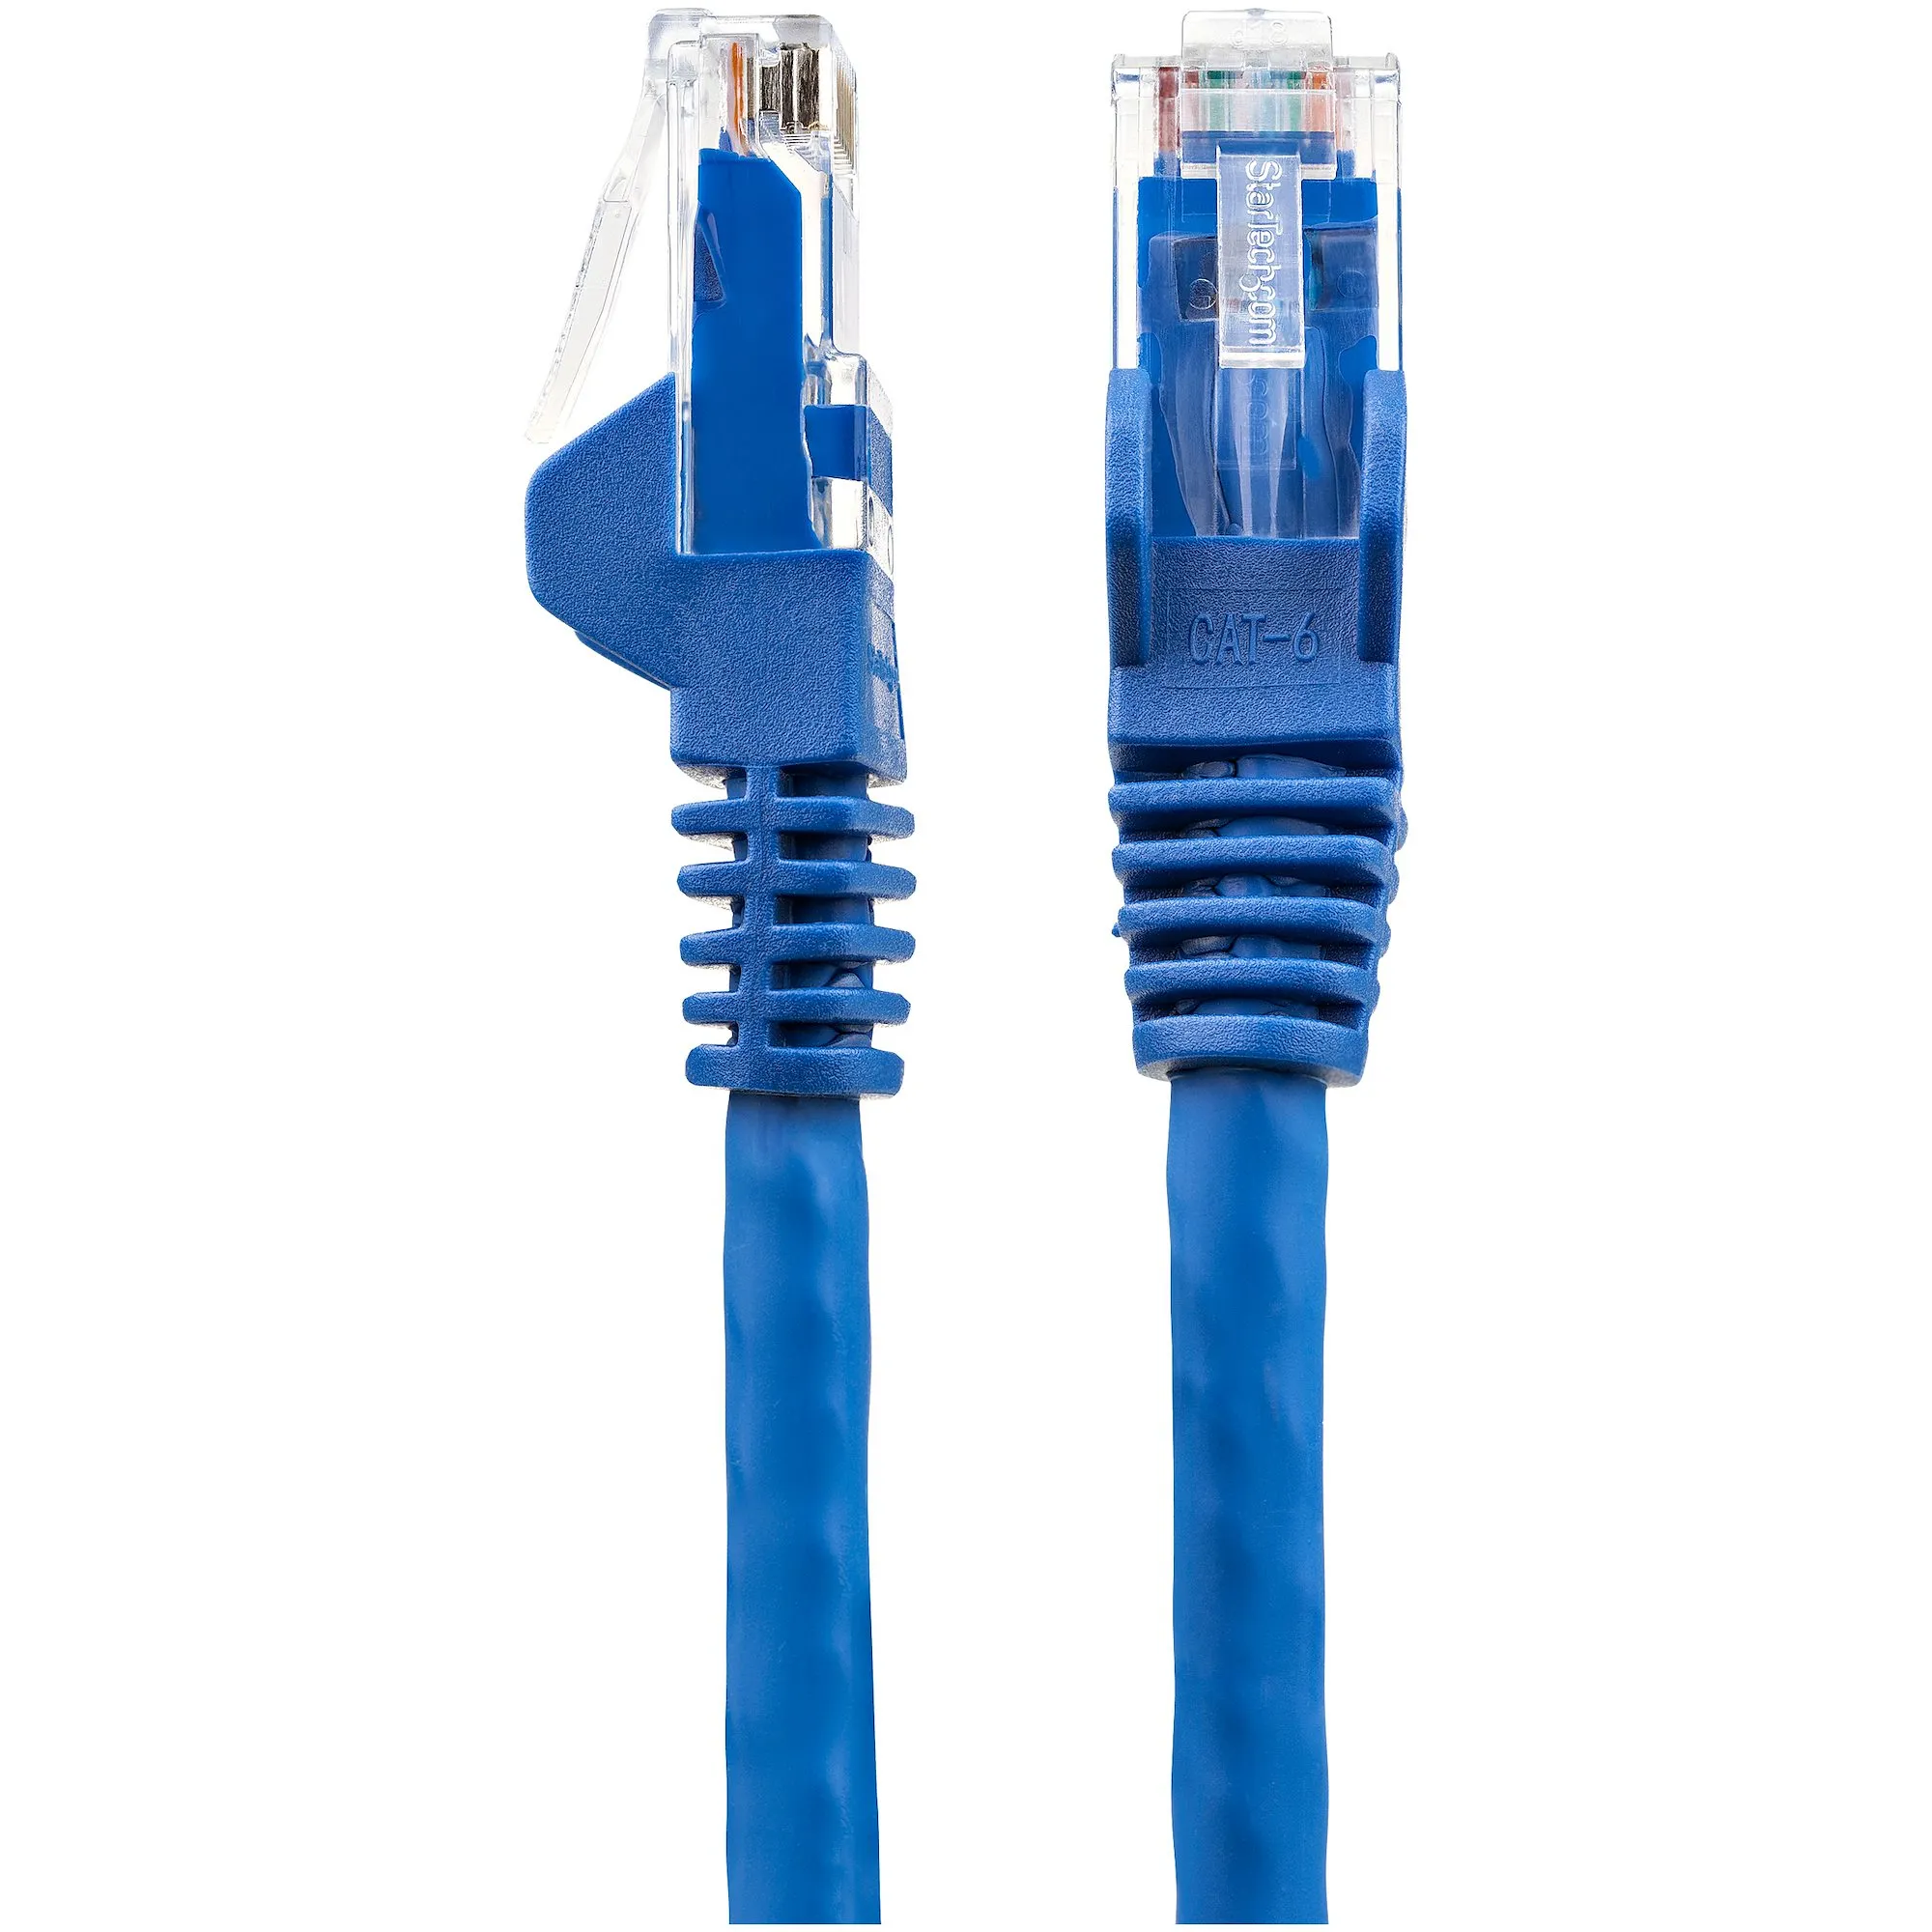 Vente StarTech.com Câble Ethernet CAT6 15m - LSZH (Low StarTech.com au meilleur prix - visuel 6